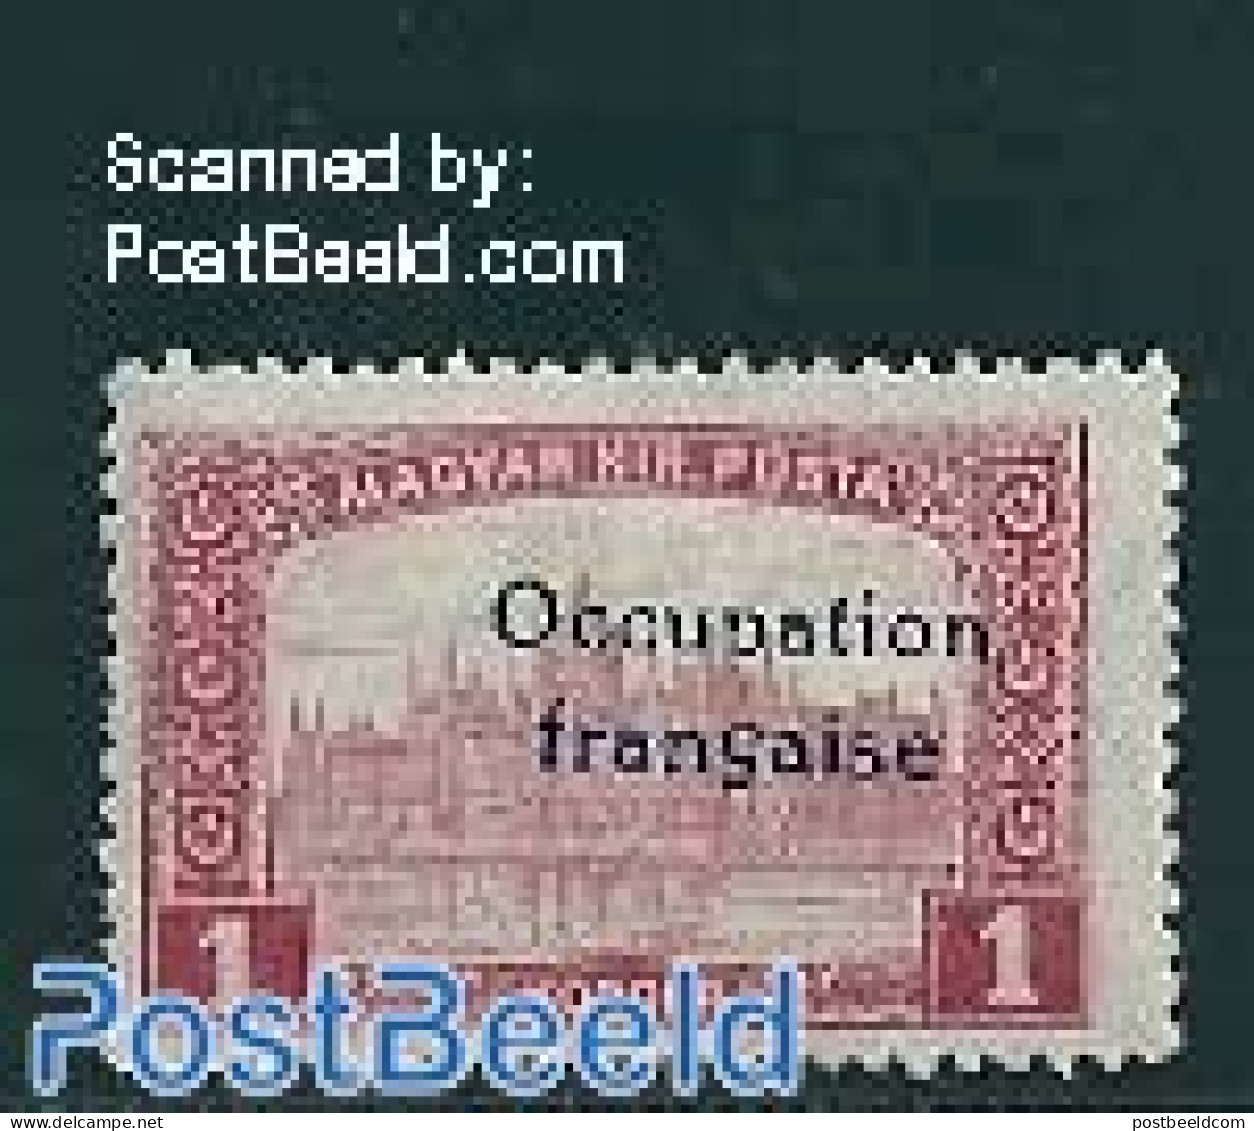 Hungary 1919 Arad, 1Kr, Stamp Out Of Set, Unused (hinged) - Unused Stamps